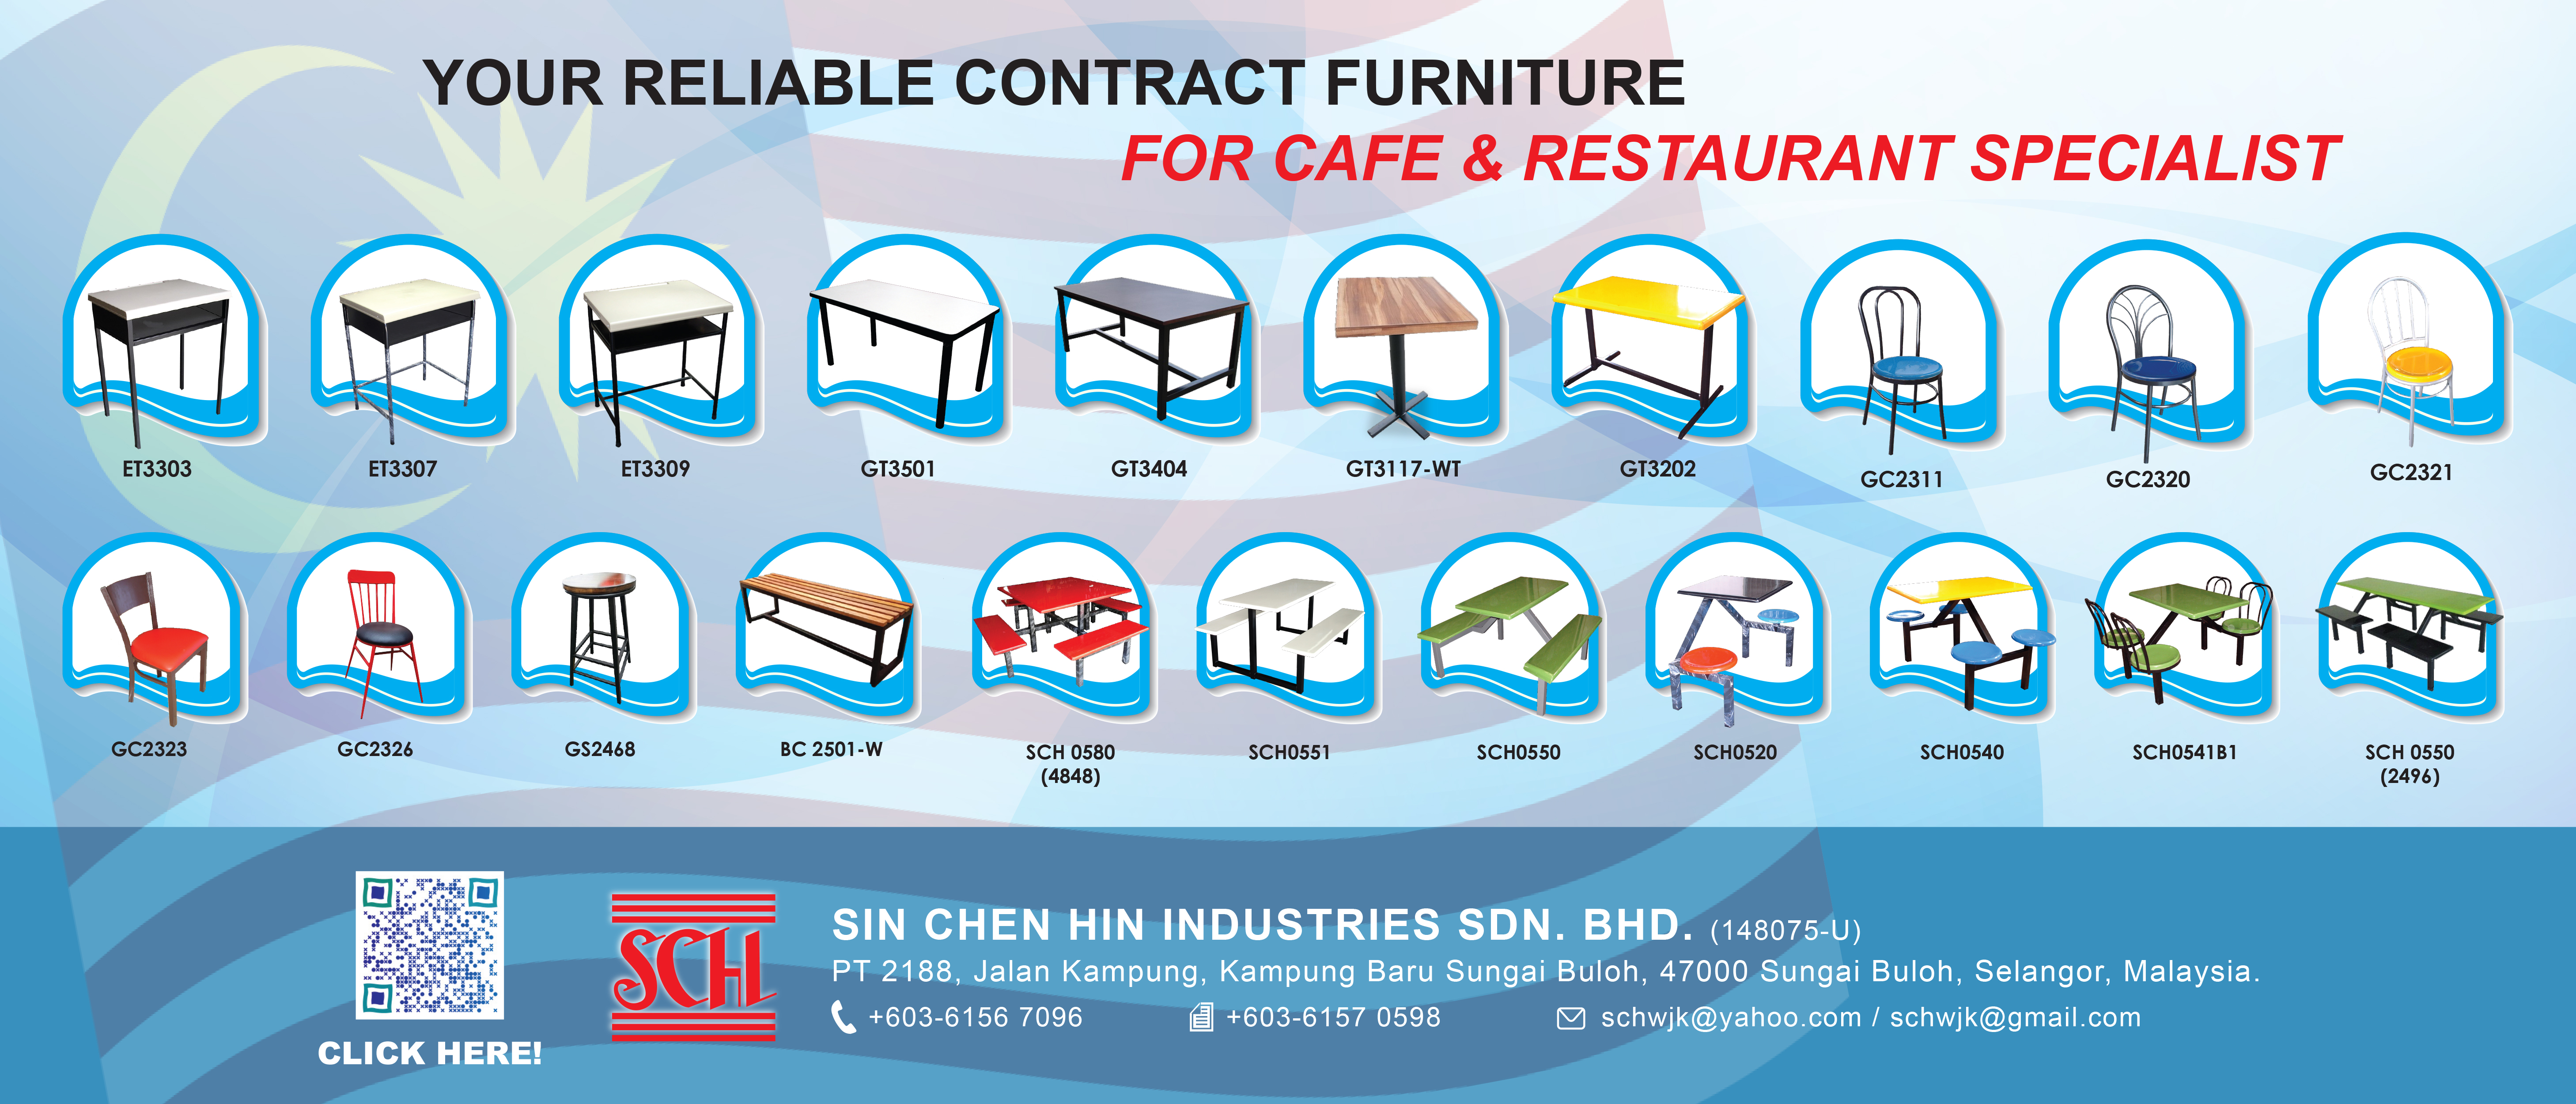 Sin Chen Hin Industries SB.jpg